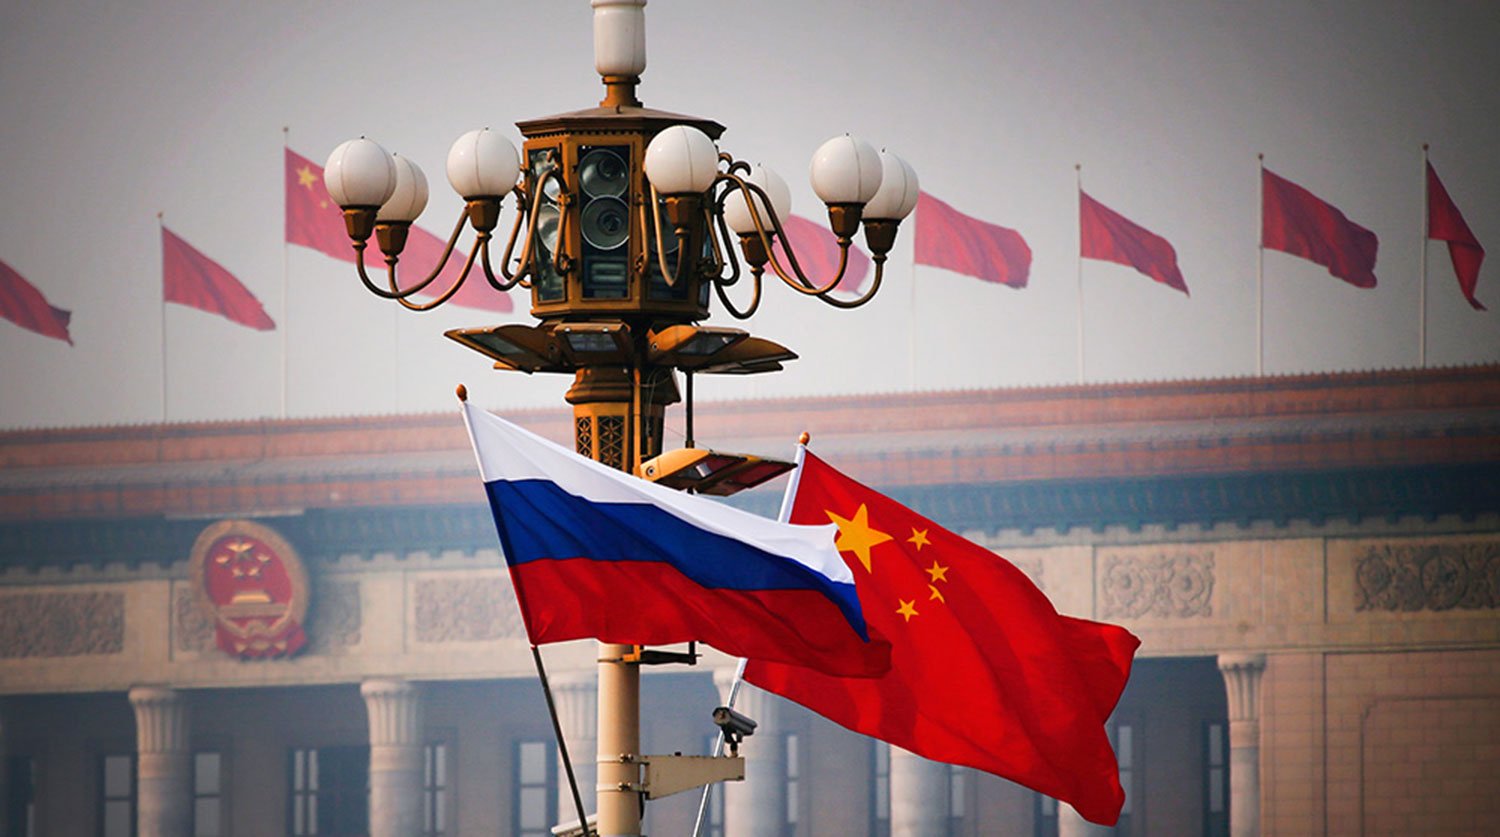 Ռուսաստանը կտրուկ կավելացնի էլեկտրաէներգիայի մատակարարումը Չինաստան